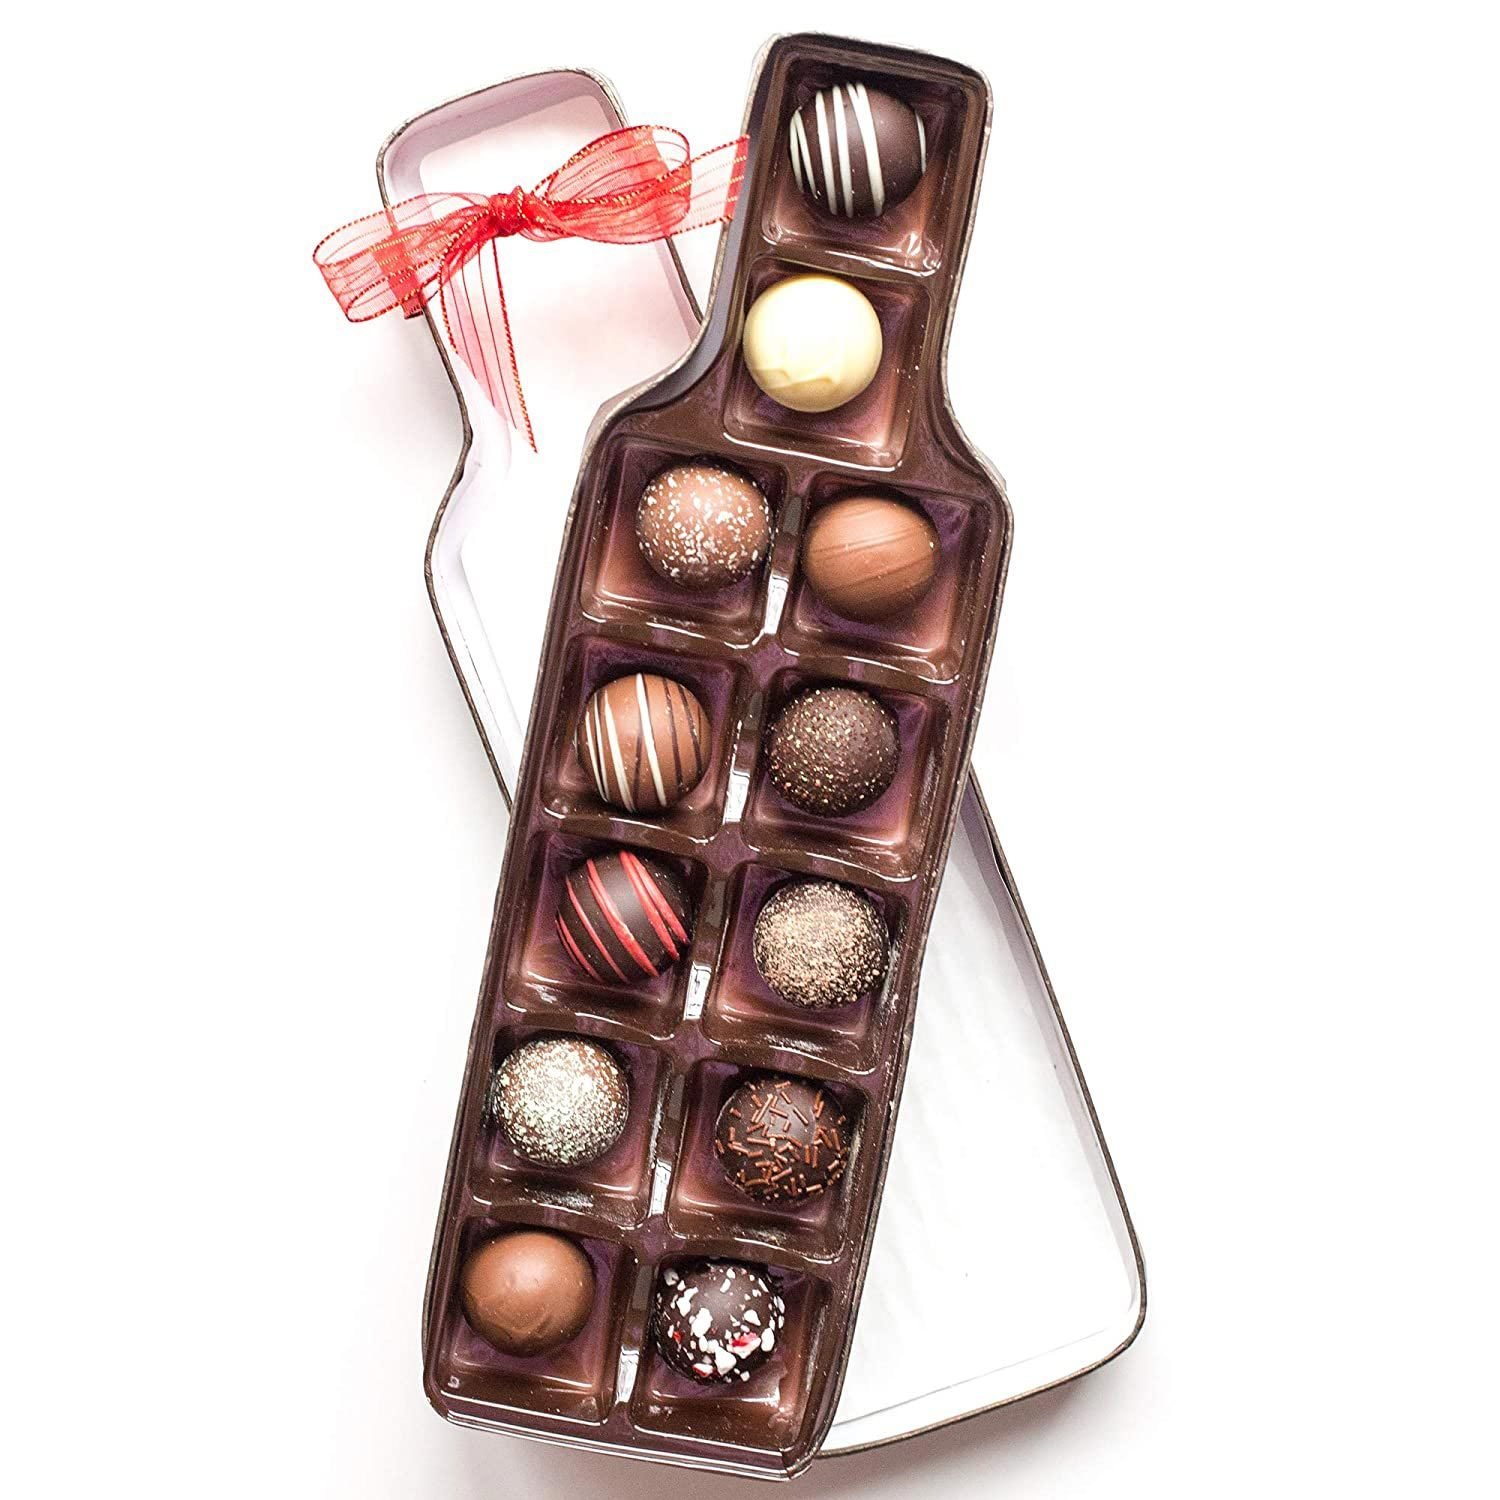 Sugar Plum Chocolates Chocolate Truffle Gift Box